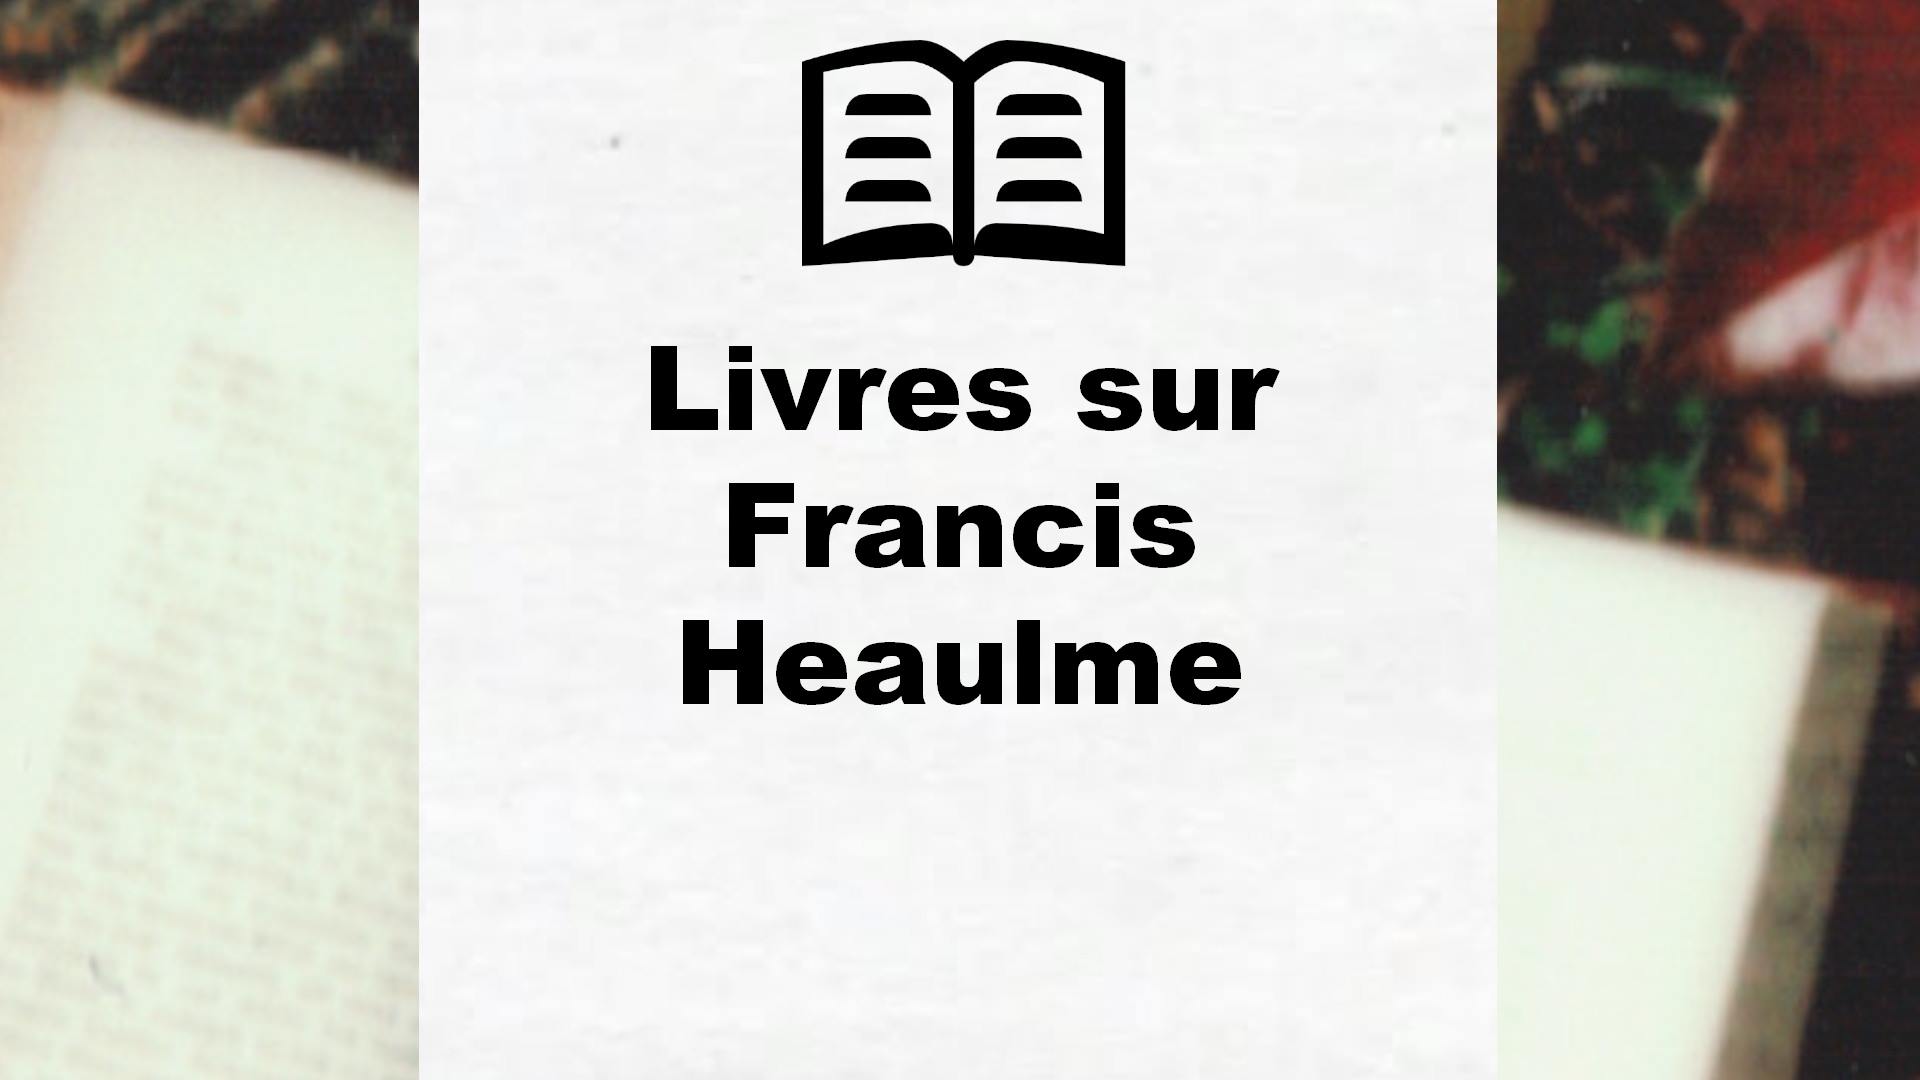 Livres sur Francis Heaulme